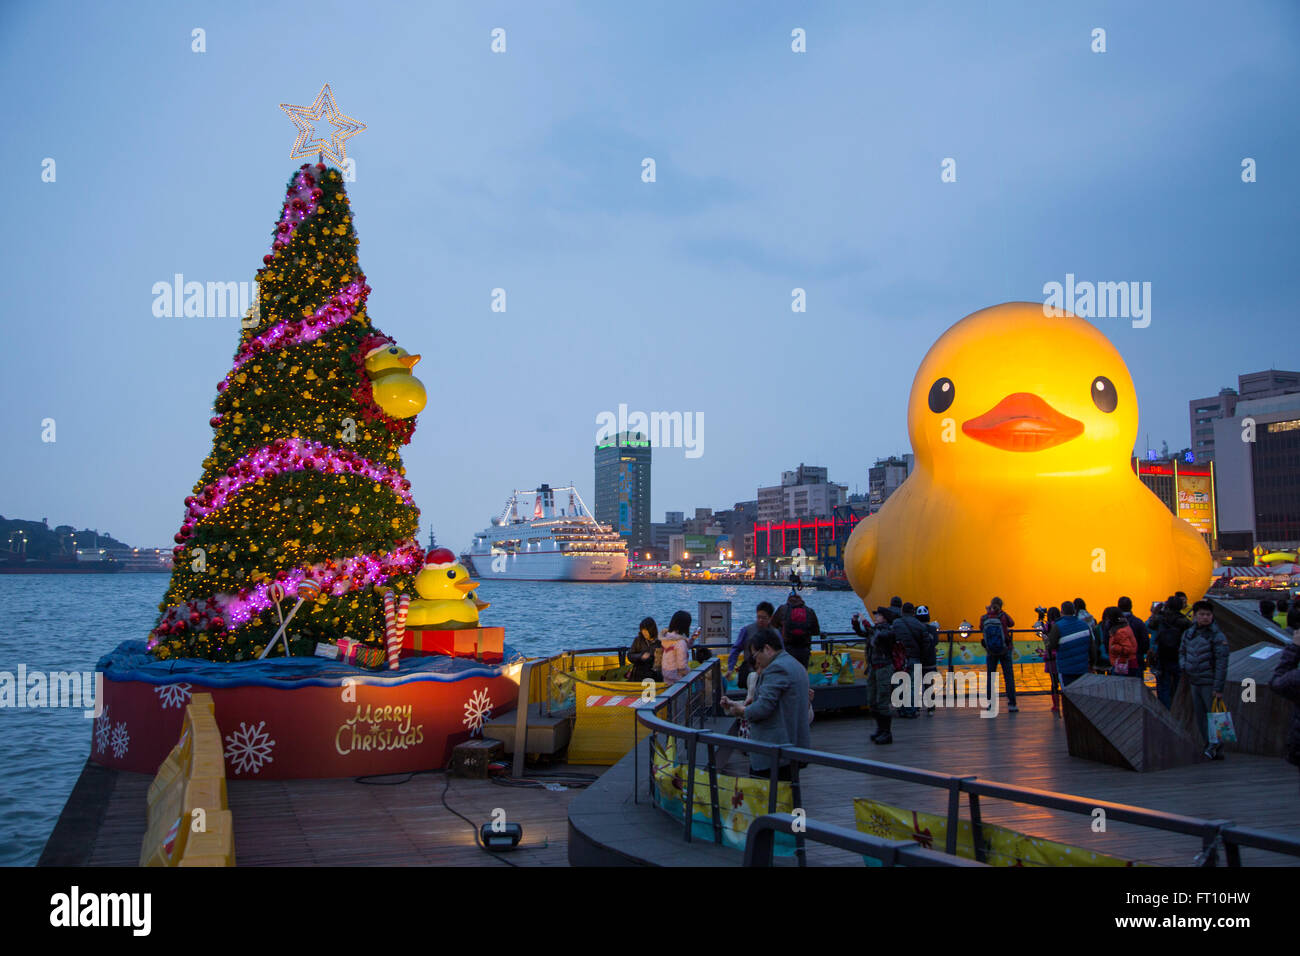 Arbre de Noël et en caoutchouc géant flottant canard sculpture, conçu par l'artiste néerlandais Florentijn Hofman, dans le port de Keelung, au crépuscule, dans le nord de Taiwan, Taiwan Banque D'Images